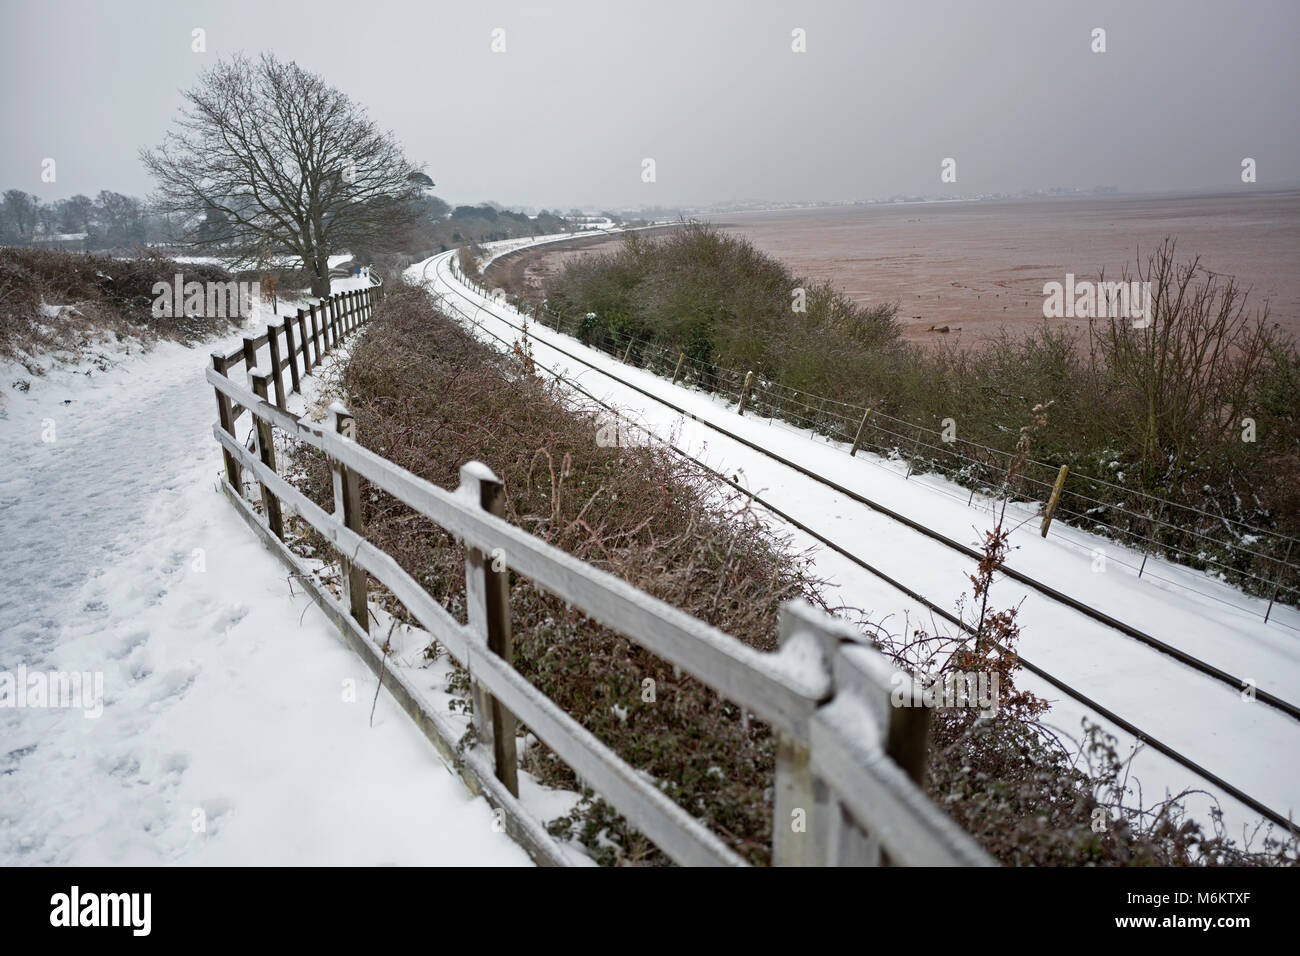 Railway track in snow, UK Stock Photo